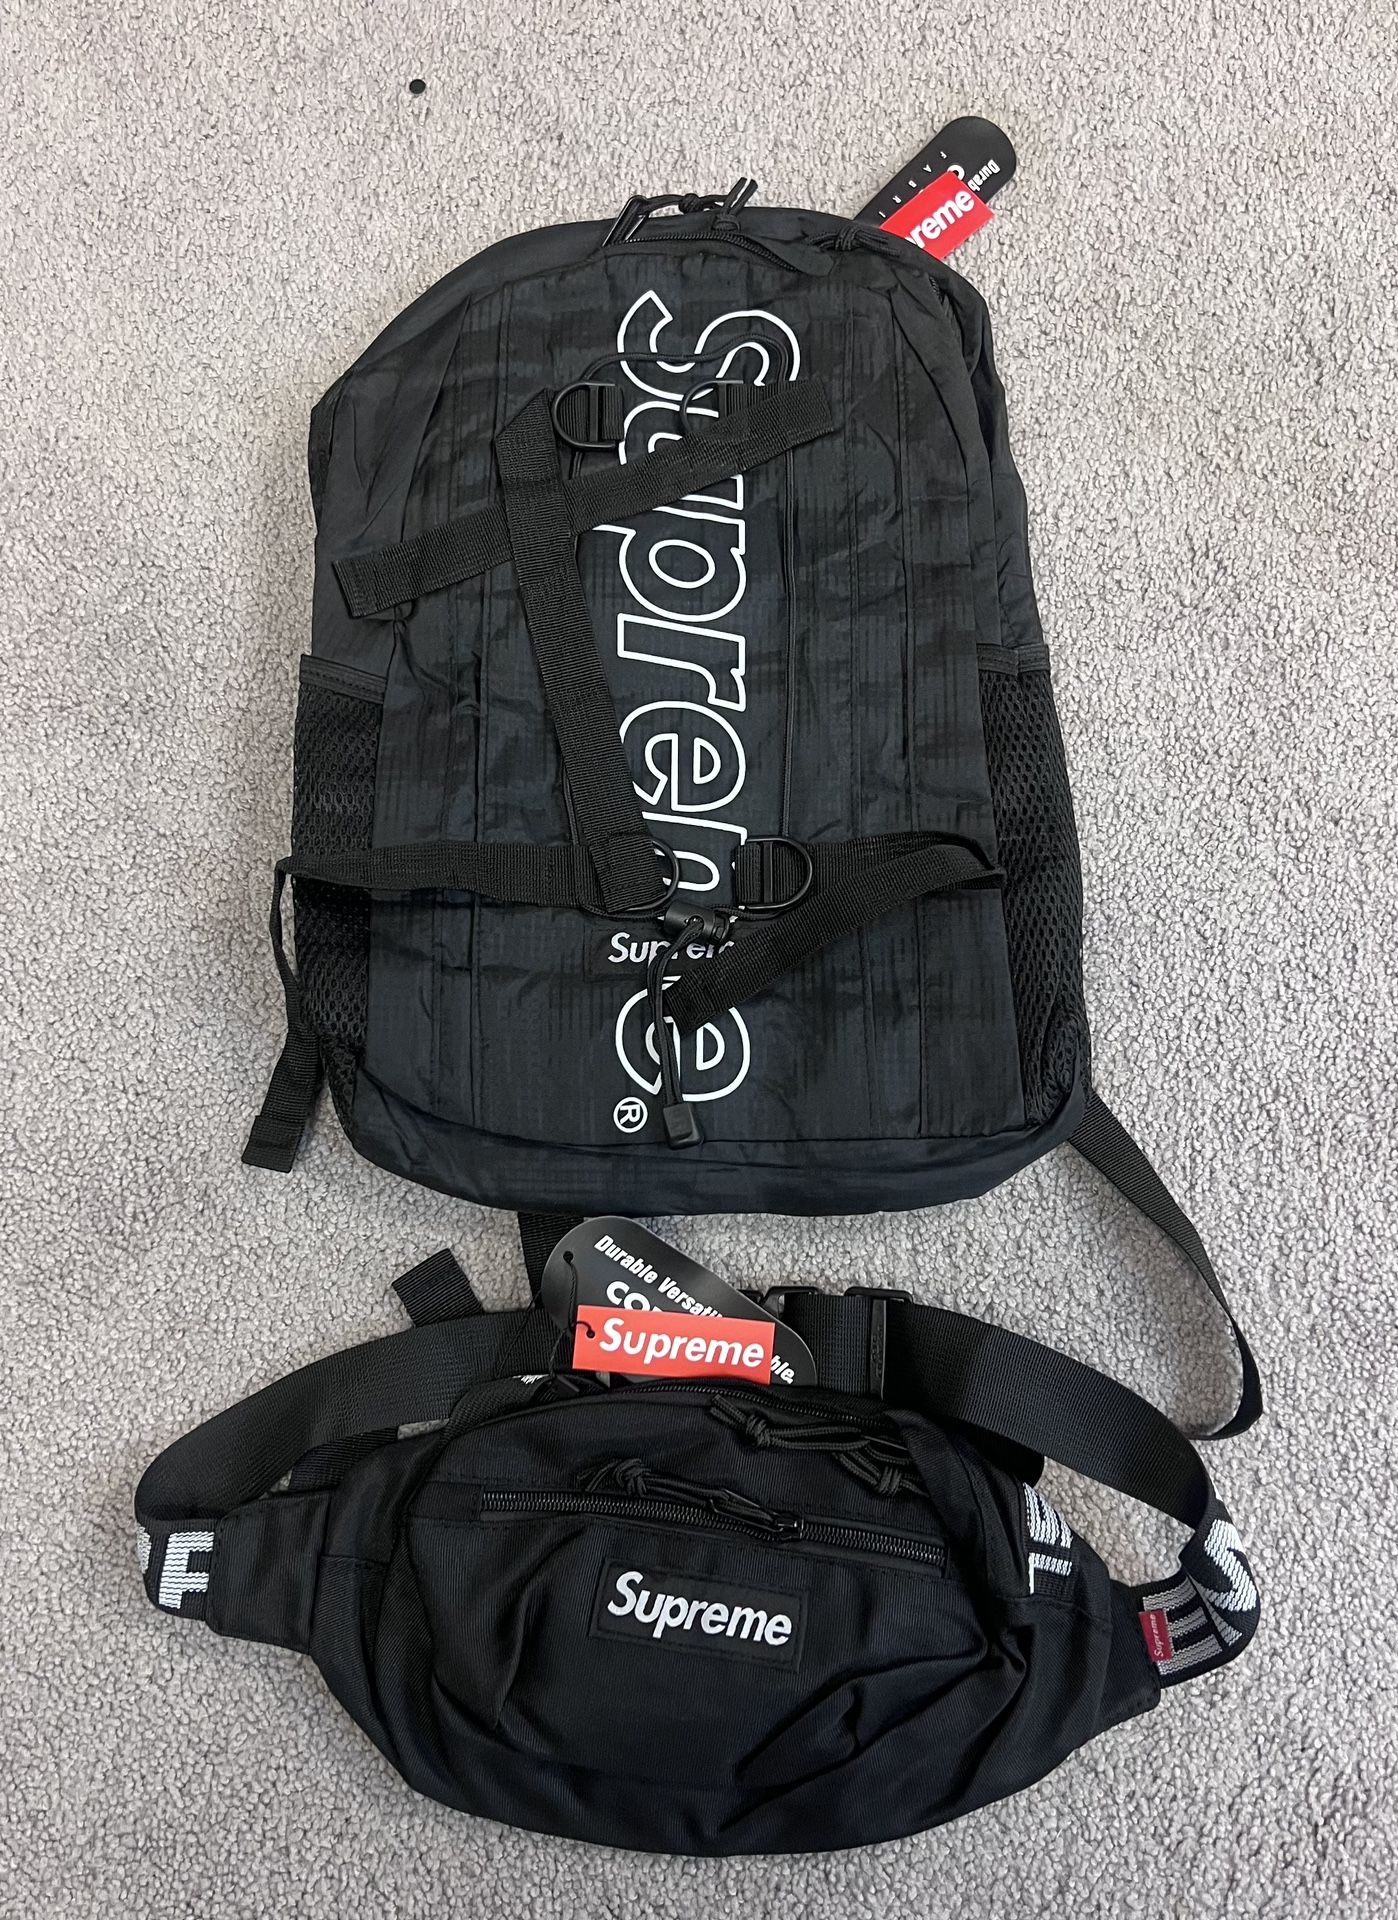 Supreme FW18 Backpack Bag - Black 